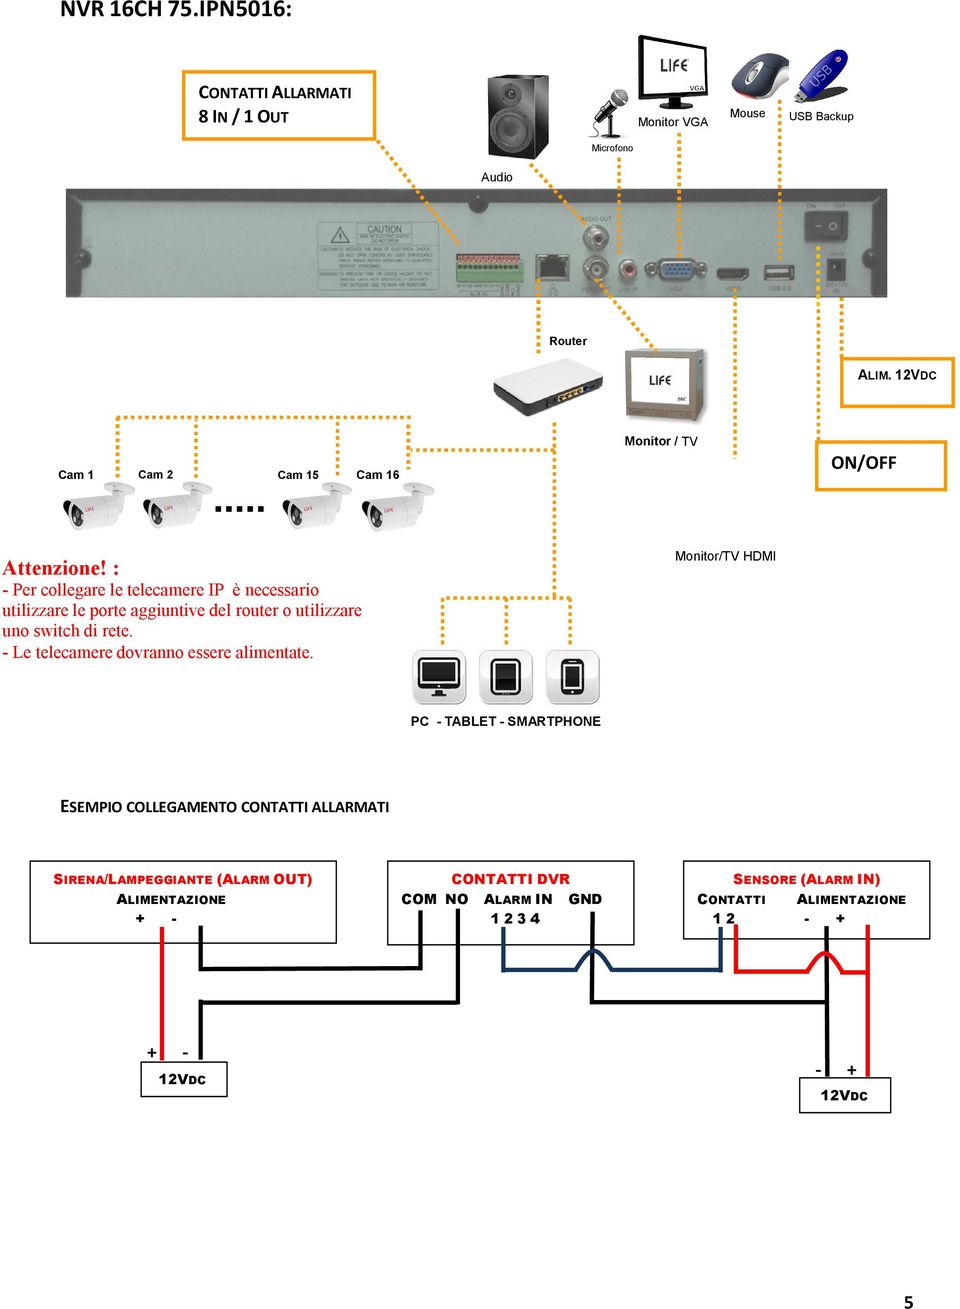 : - Per collegare le telecamere IP è necessario utilizzare le porte aggiuntive del router o utilizzare uno switch di rete.